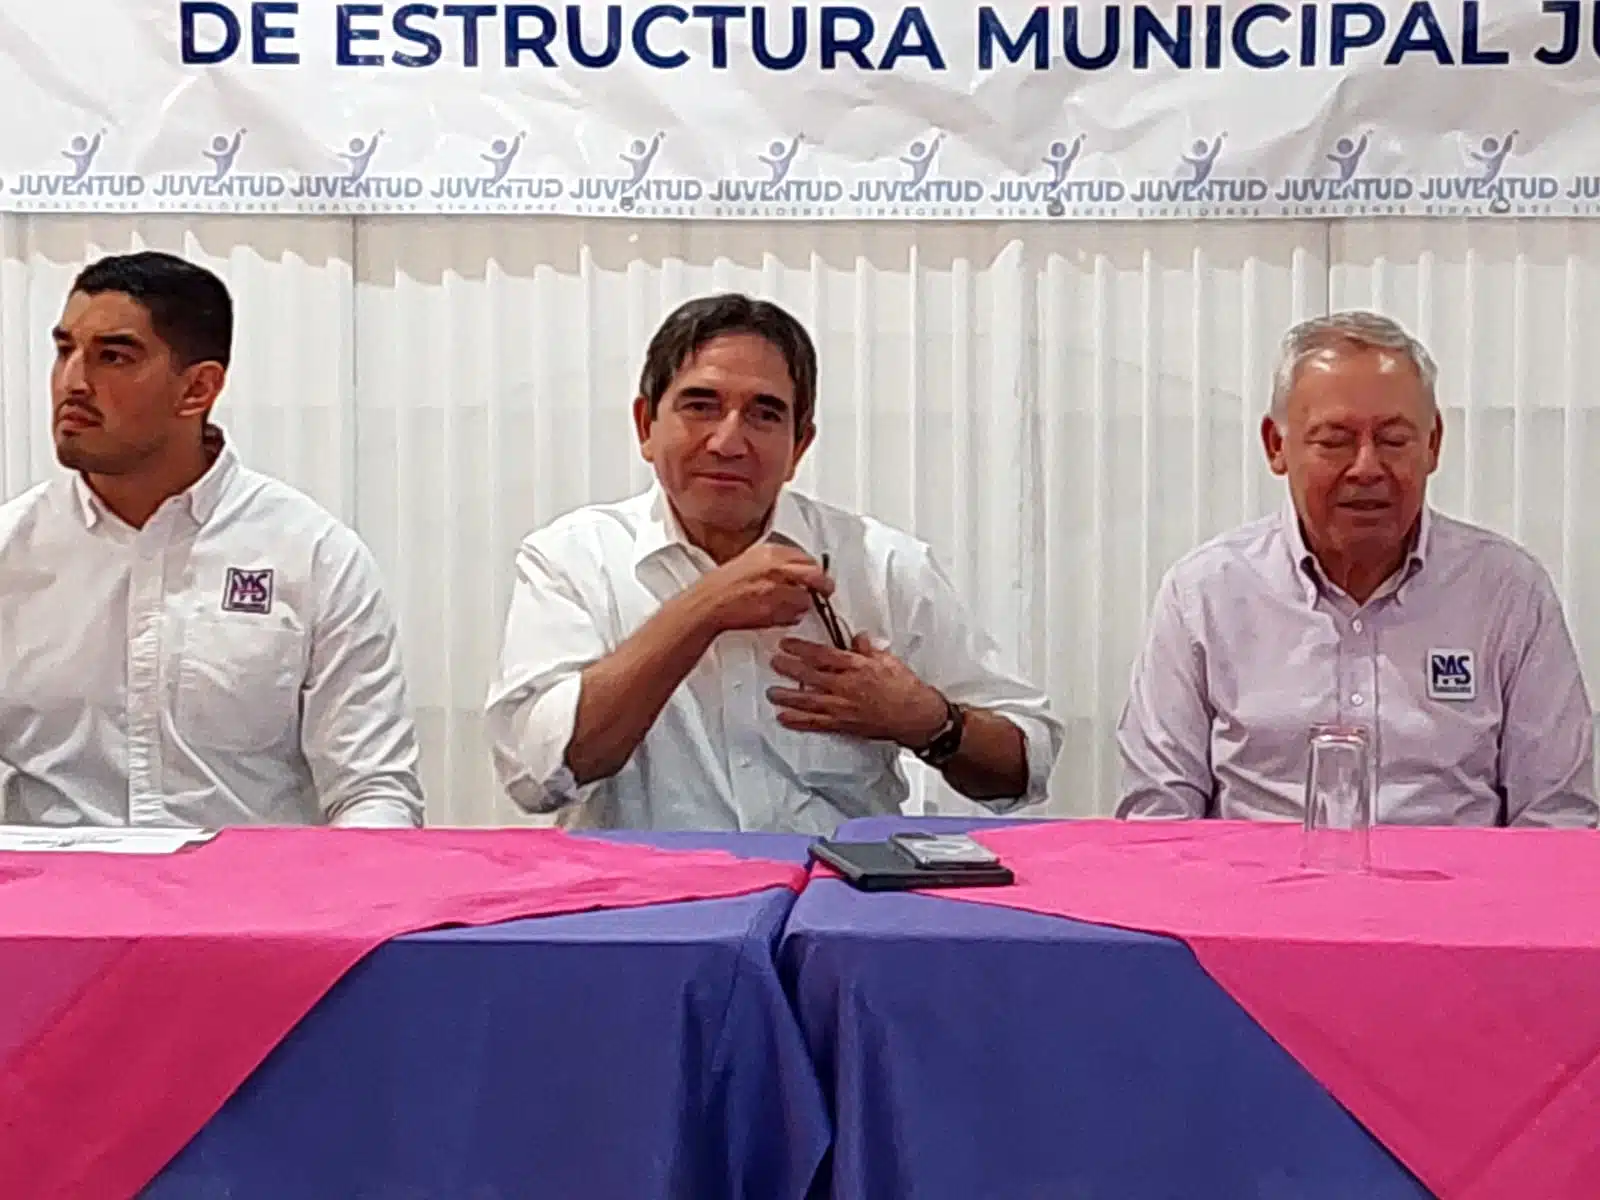 “Yo todavía no me convenzo”: Reforma electoral tiene que debatirse, dice Cuén Ojeda